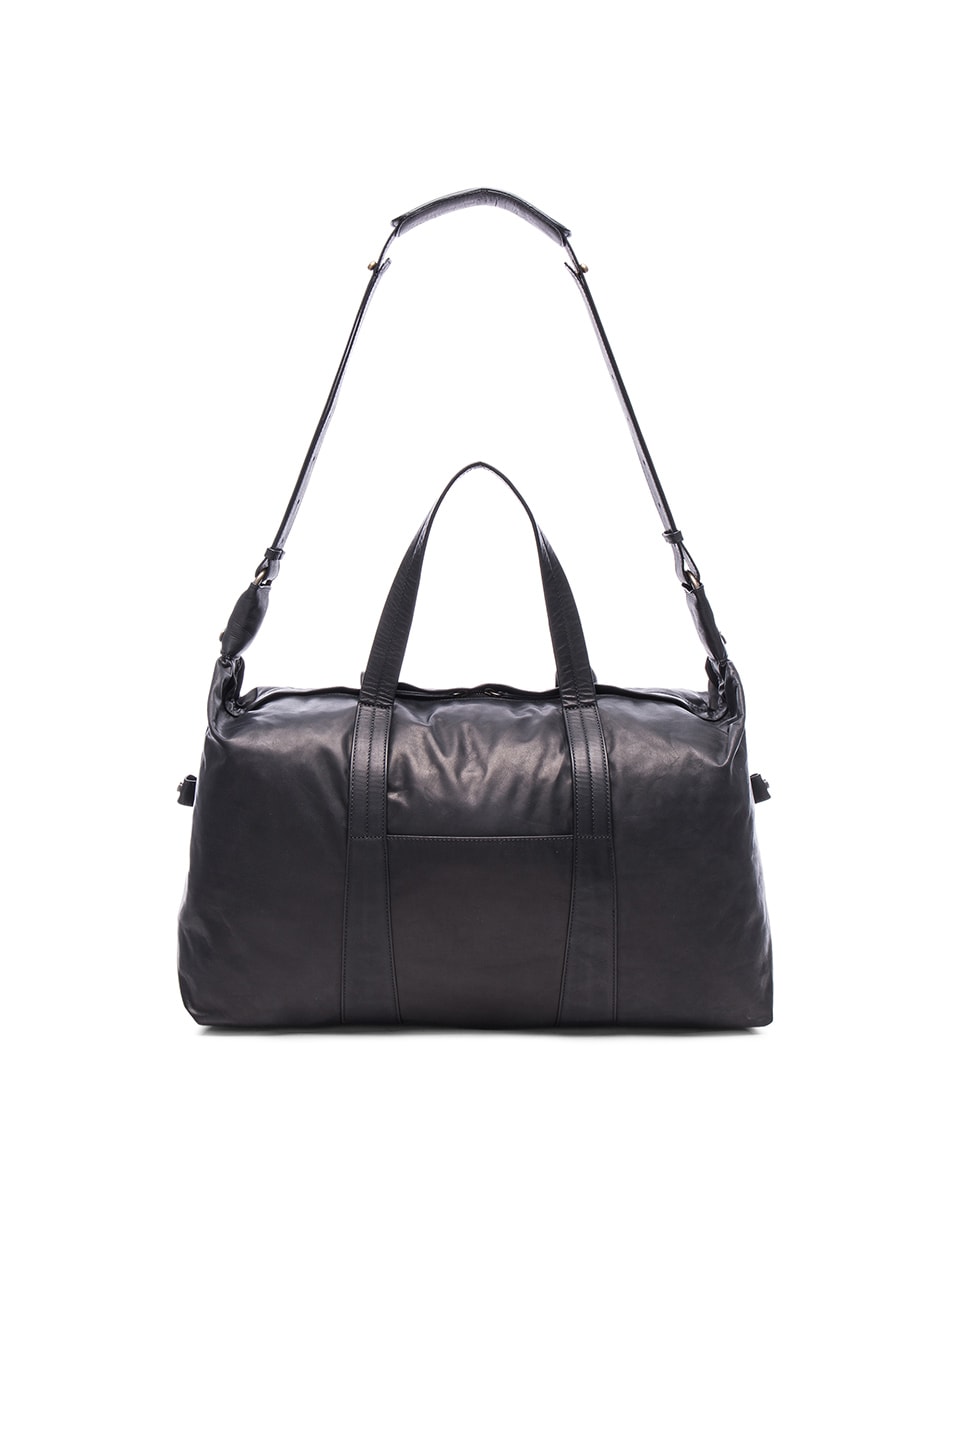 Maison Margiela Duffel Bag in Black | FWRD